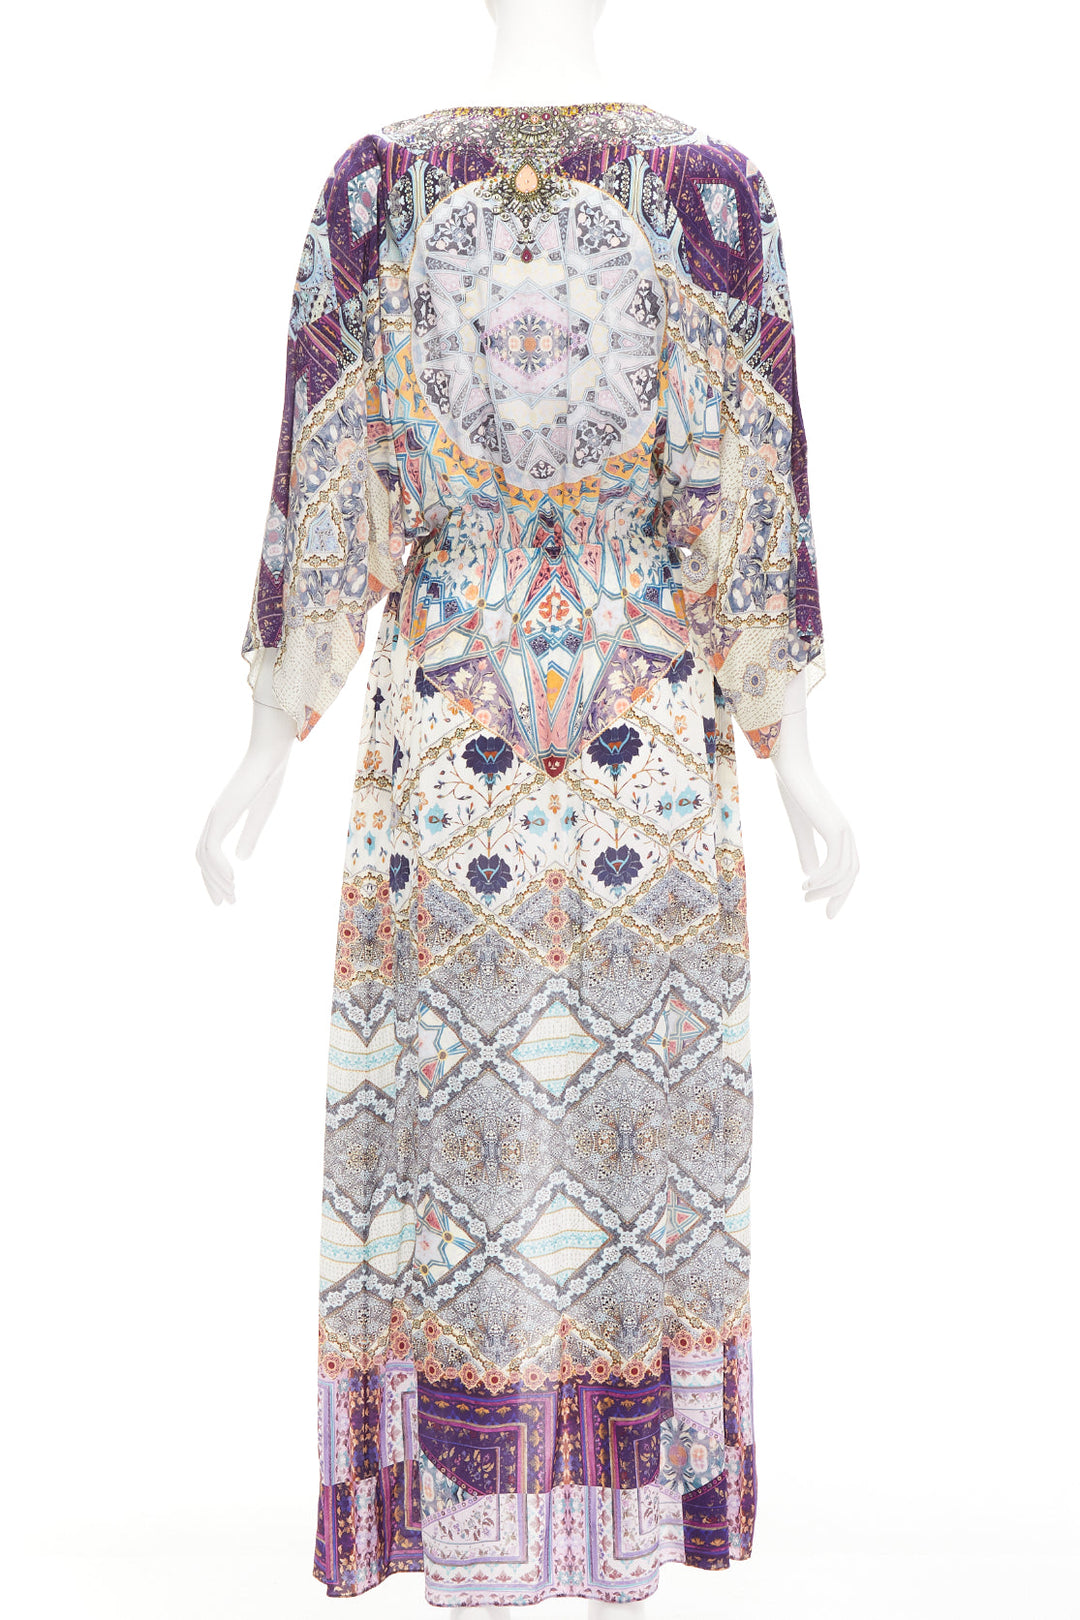 CAMILLA 2016 Tales Of Tatiana 100% silk embellished floral print dress S